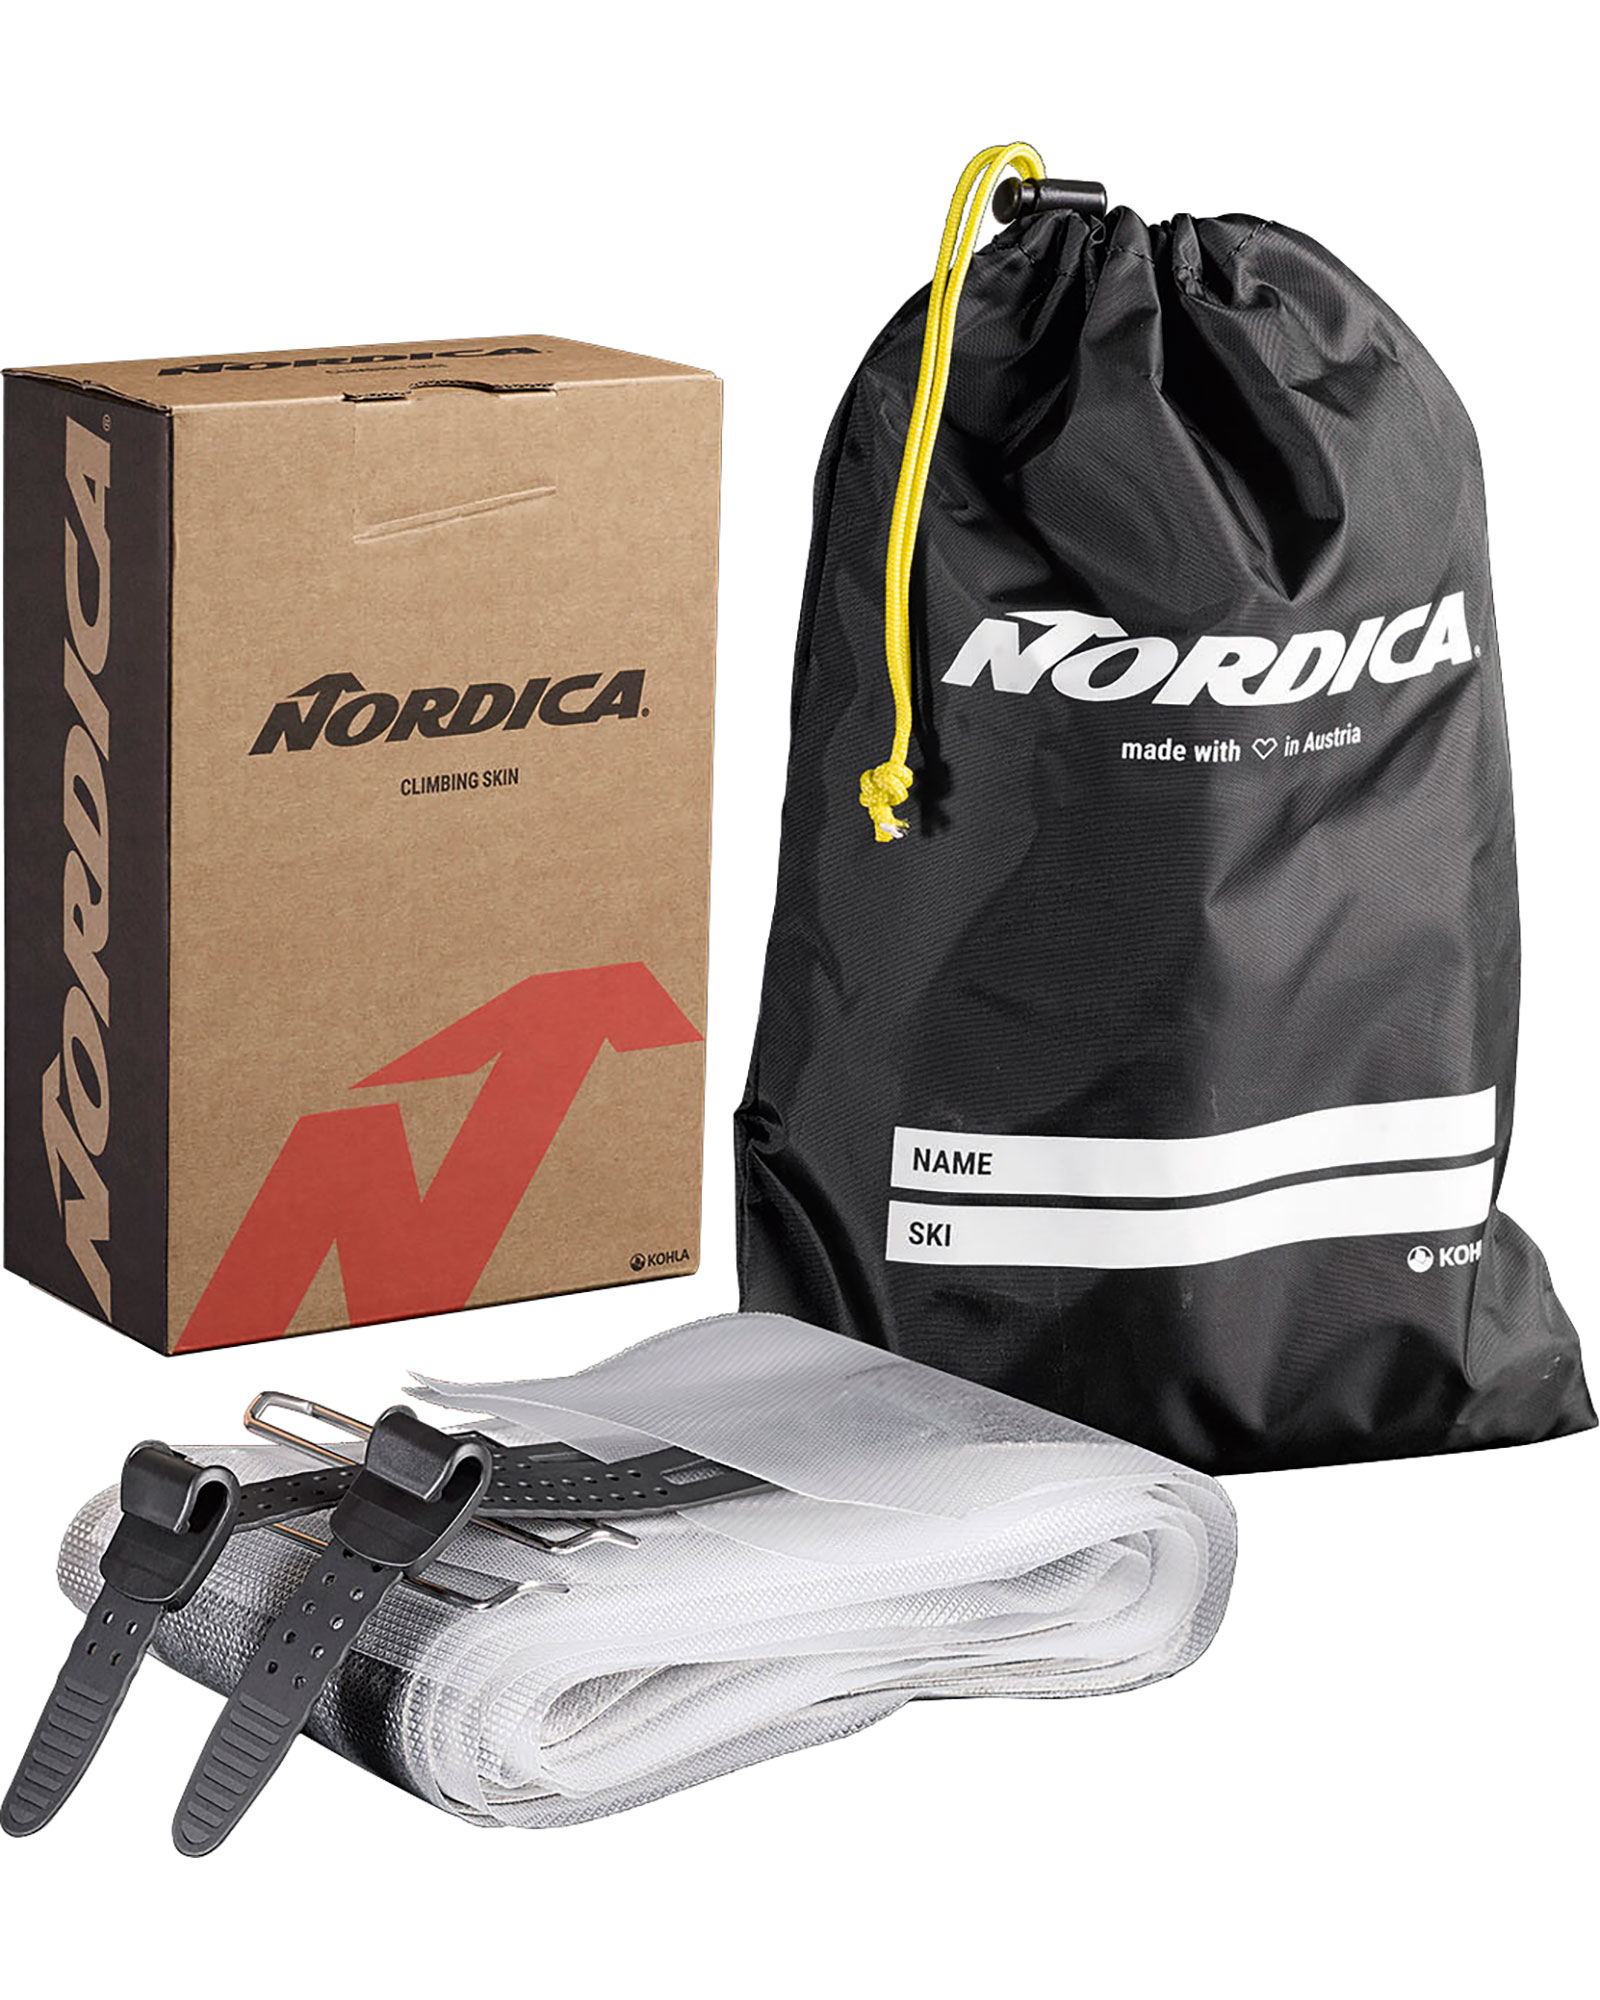 Nordica Enforcer / Santa Ana 88 Skins 172cm